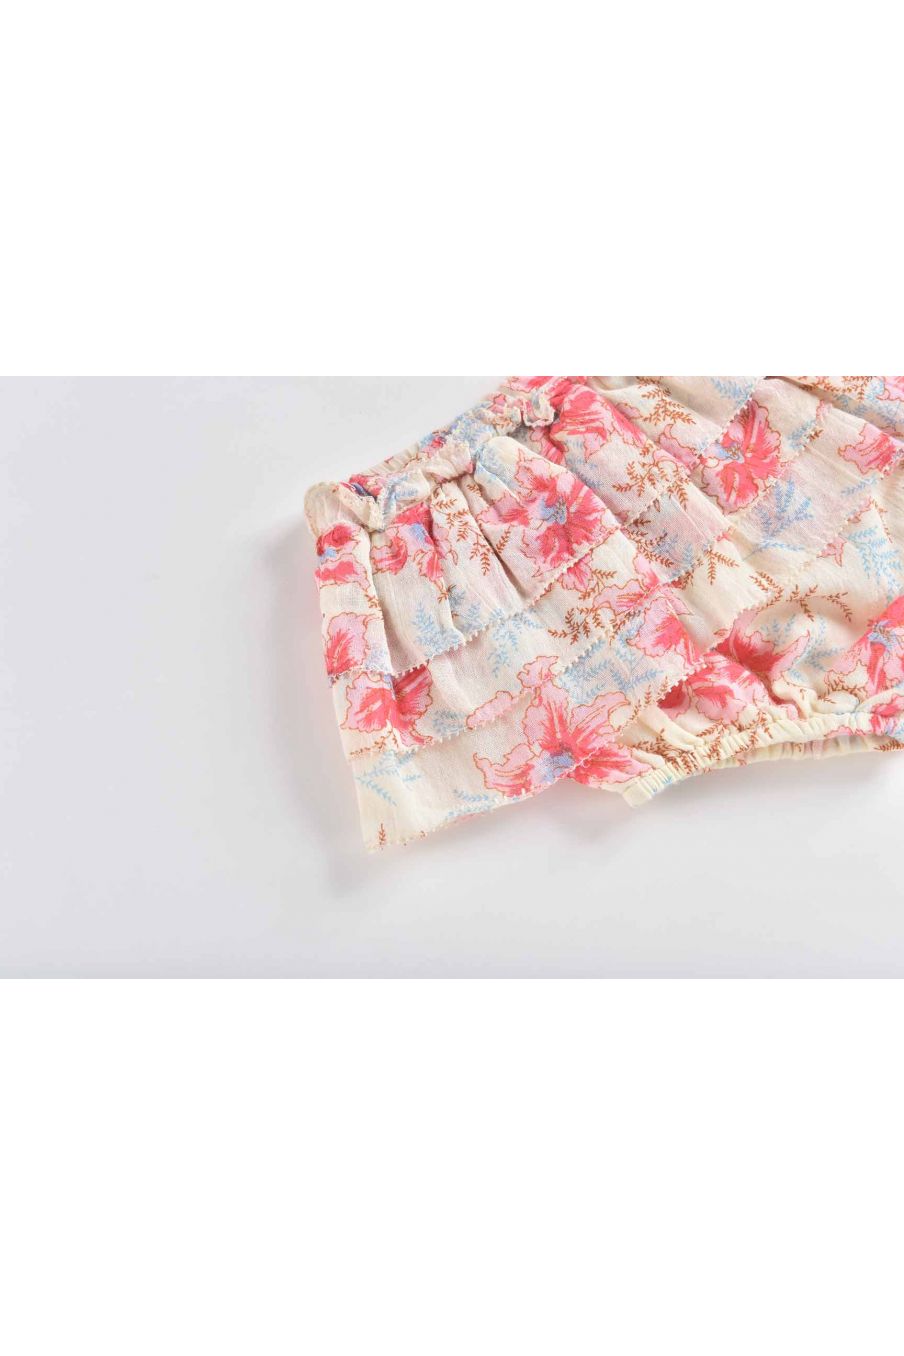 baby-girls-shorts-simoune-raspberry-flowers